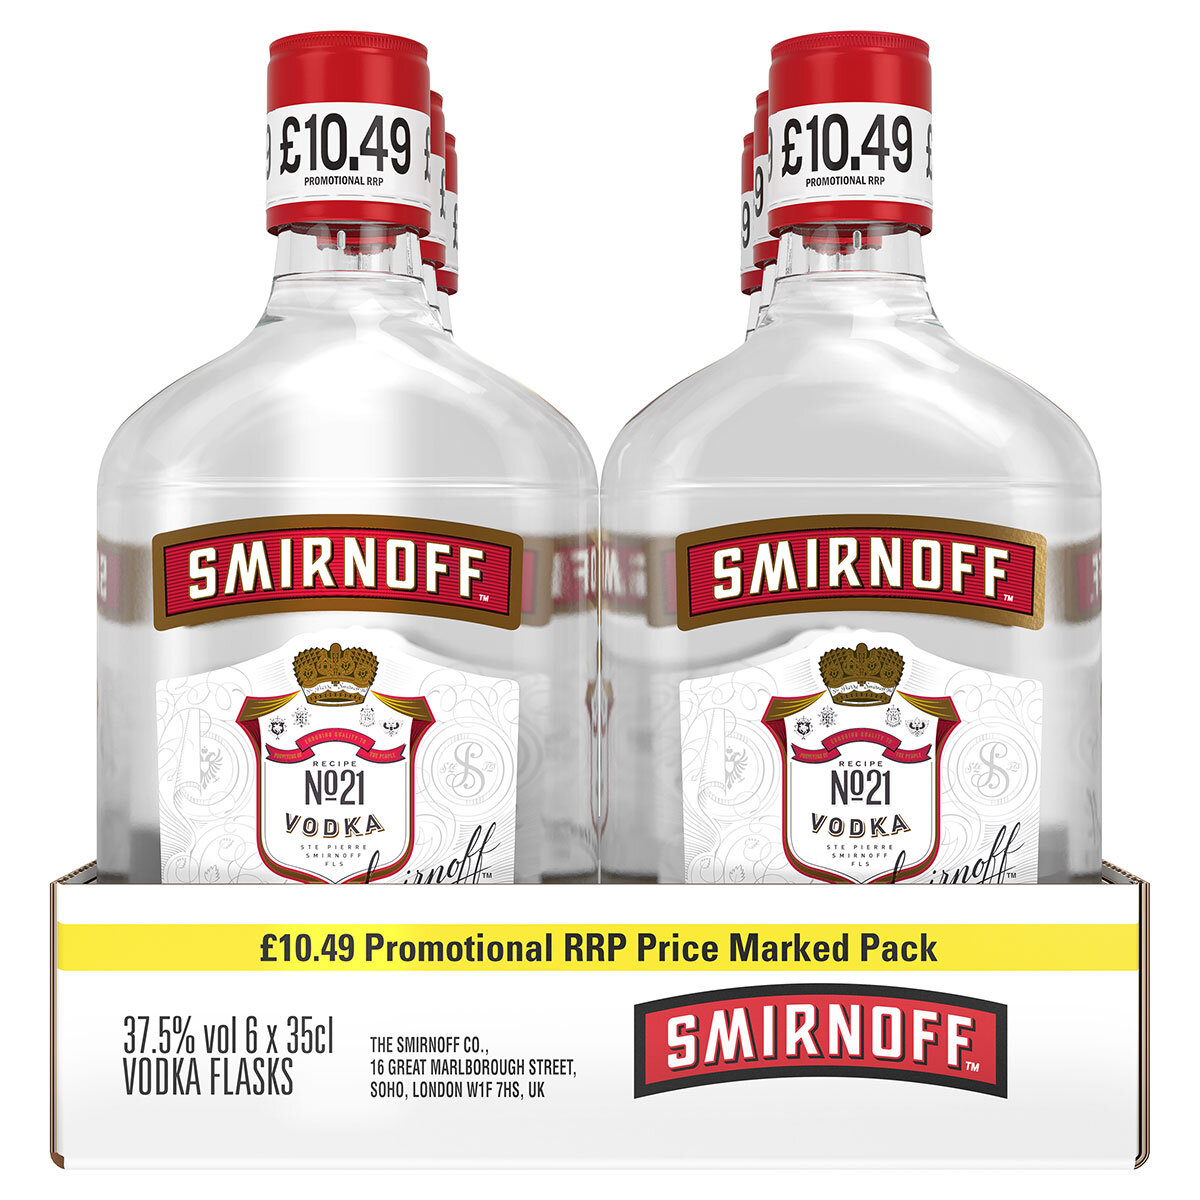 Smirnoff Red Label PMP £10.49, 6 x 35cl